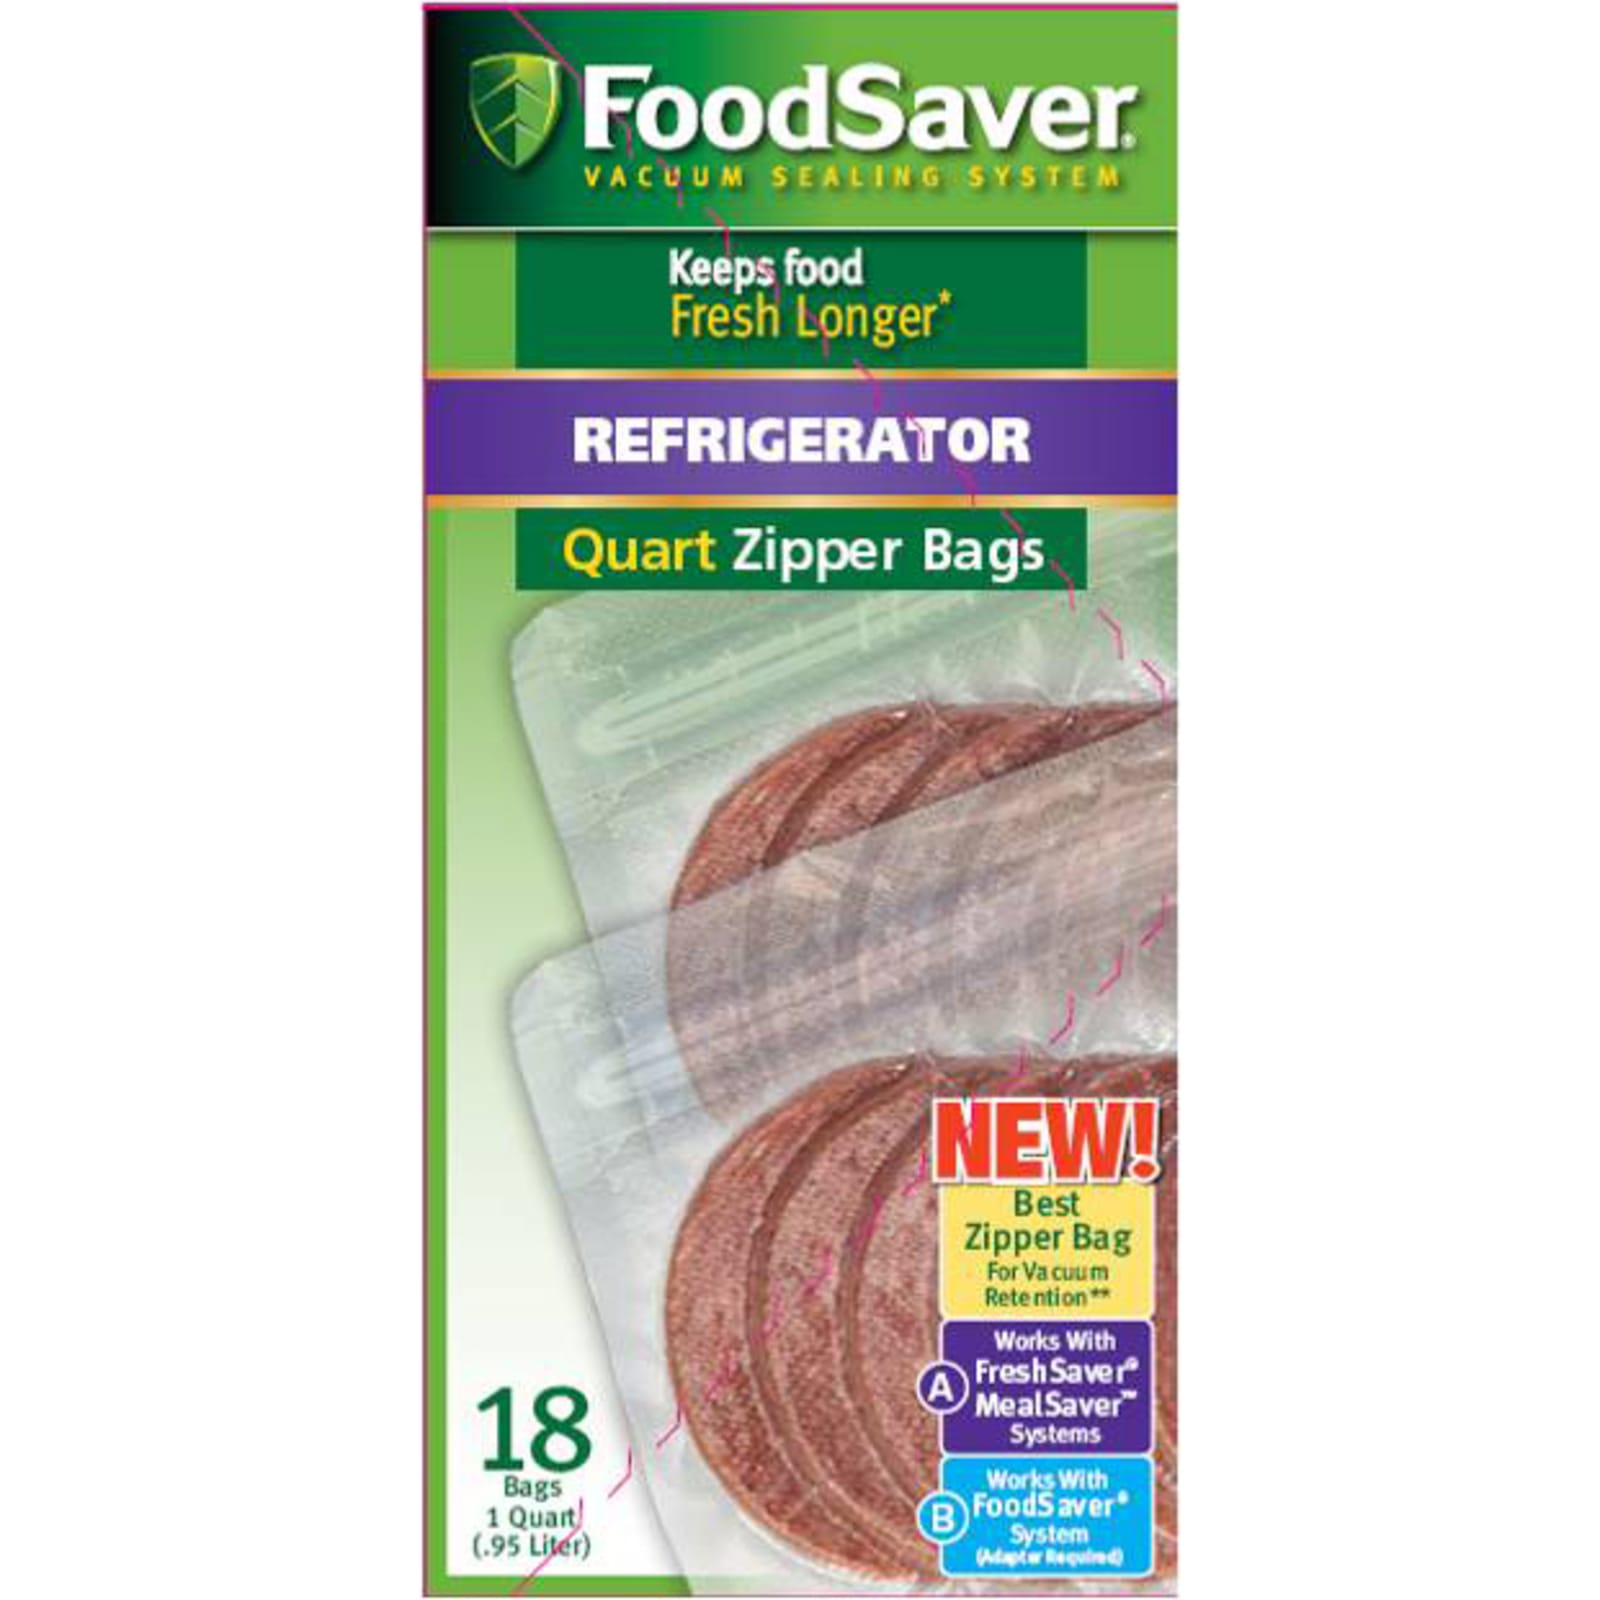 FoodSaver Quart Vacuum Seal Bags